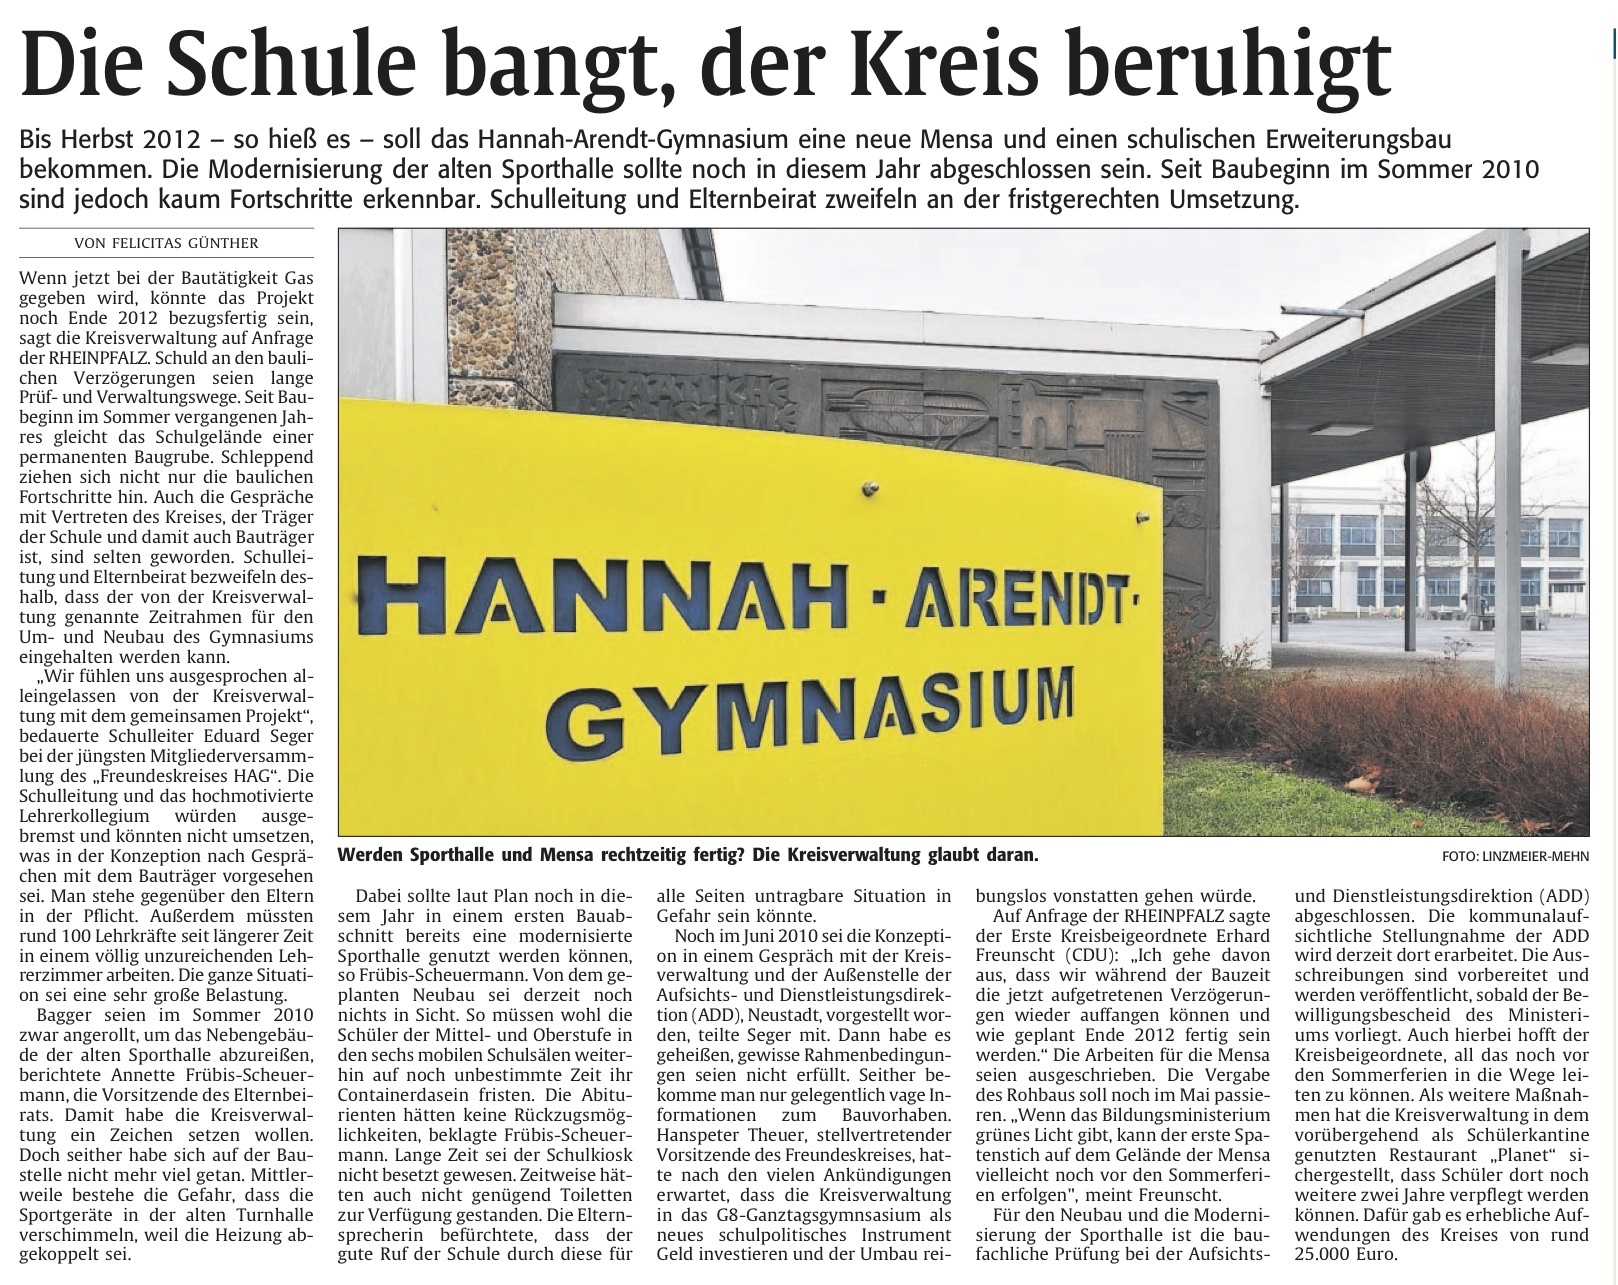 Rheinpfalz am 23.05.2011: Die Schule bang, dr Kreis beruhigt